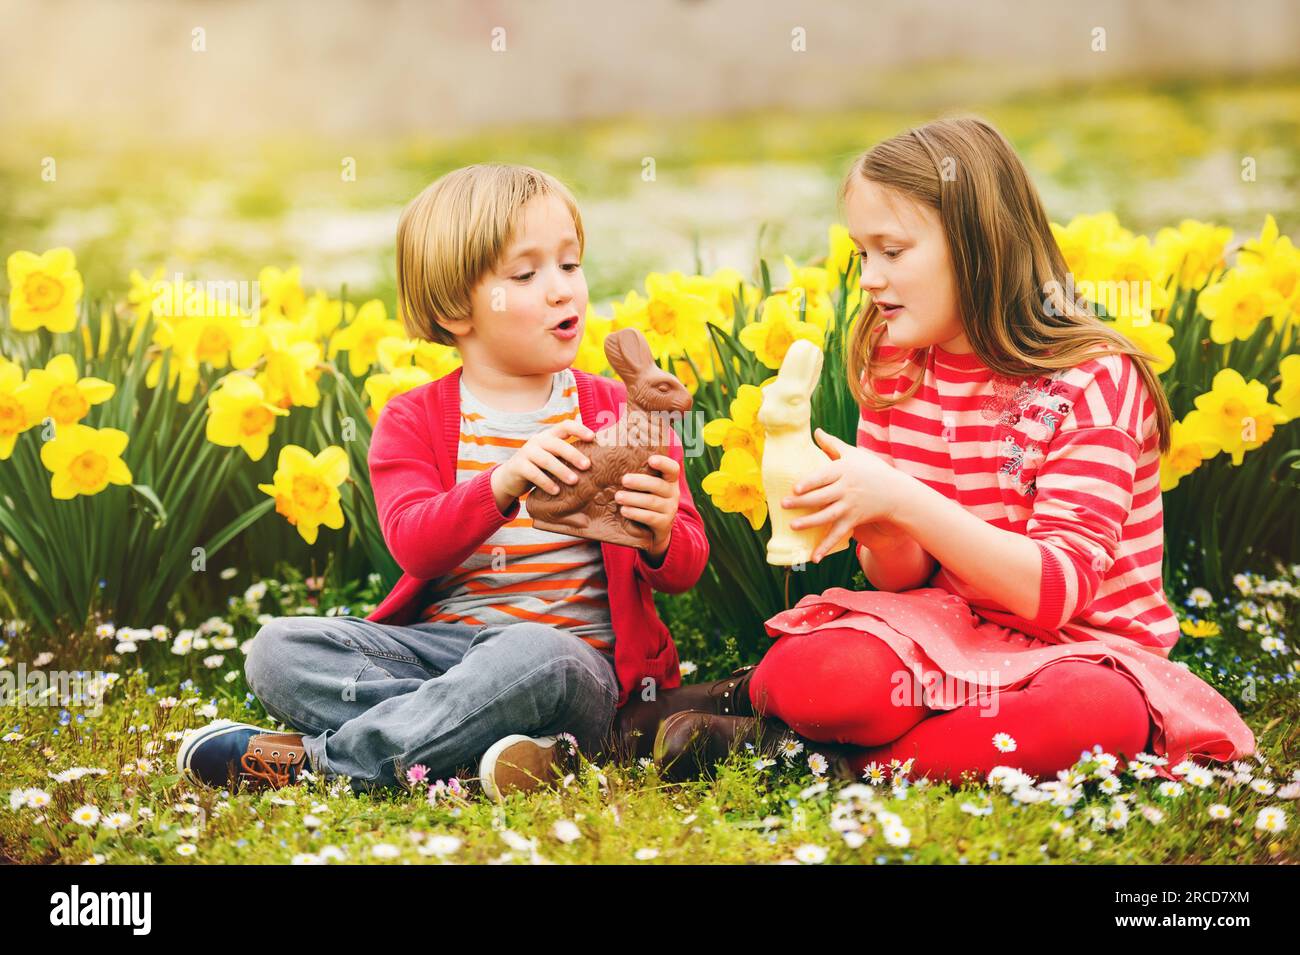 Süße kleine Kinder, große Schwester und kleiner Bruder, mit Schokoladen-Osterhasen, die ein traditionelles Festmahl feiern. Familie, Urlaub, Frühling, sorgenfreies Kind Stockfoto